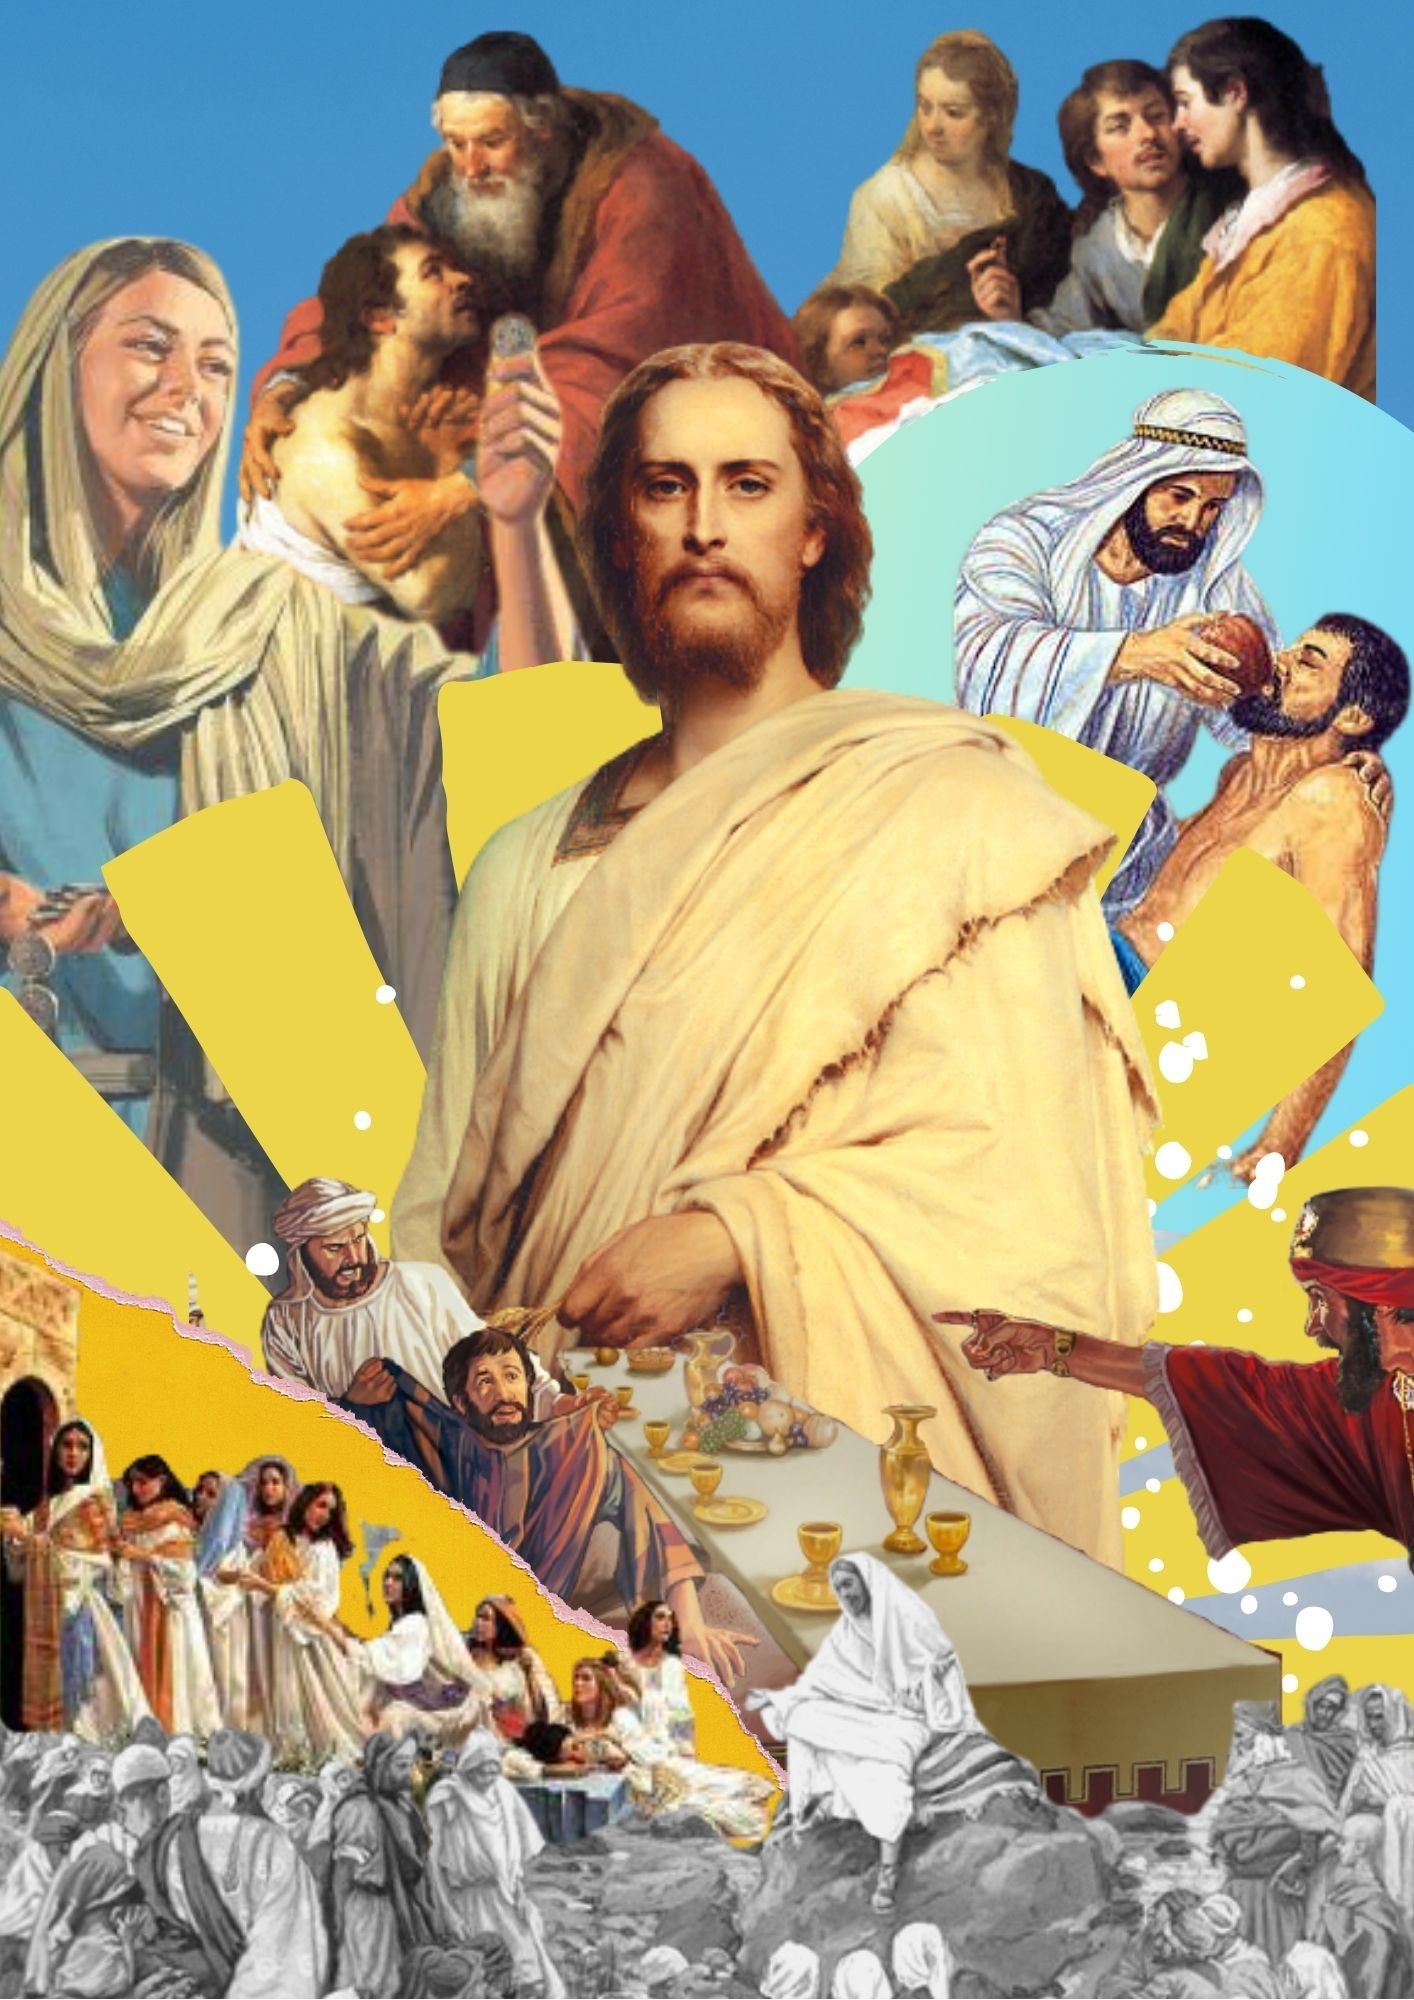  Allerheiligen Hintergrundbild 1414x2000. Parables of christ collage. Paper collage art, Collage art projects, Worship art